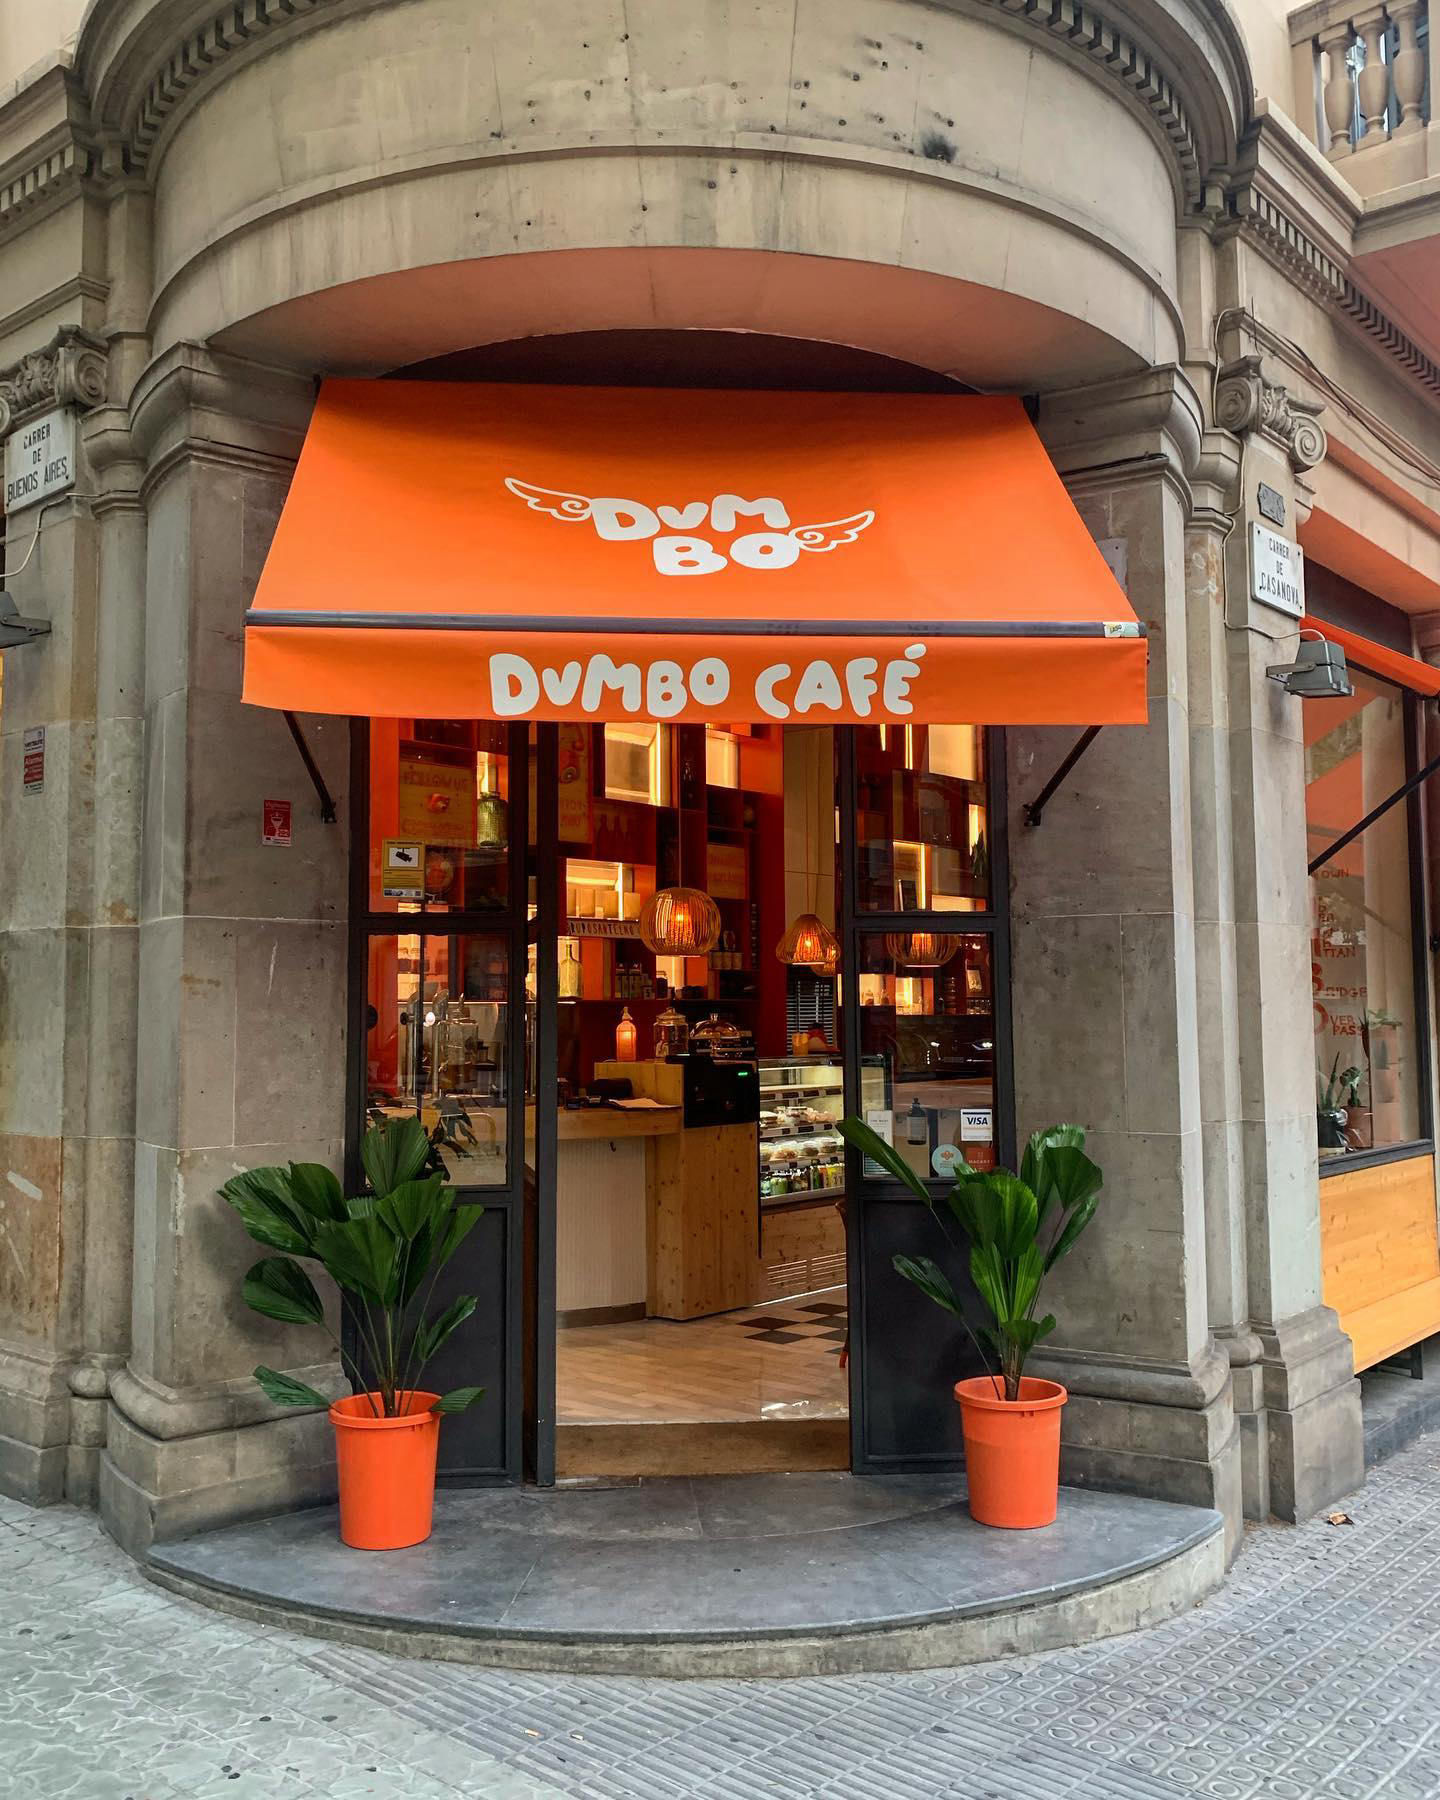 image  1 Buscamos Terrazas Barcelona - La nueva propuesta gastronómica de #gruposantelmo se llama #dumbocafe